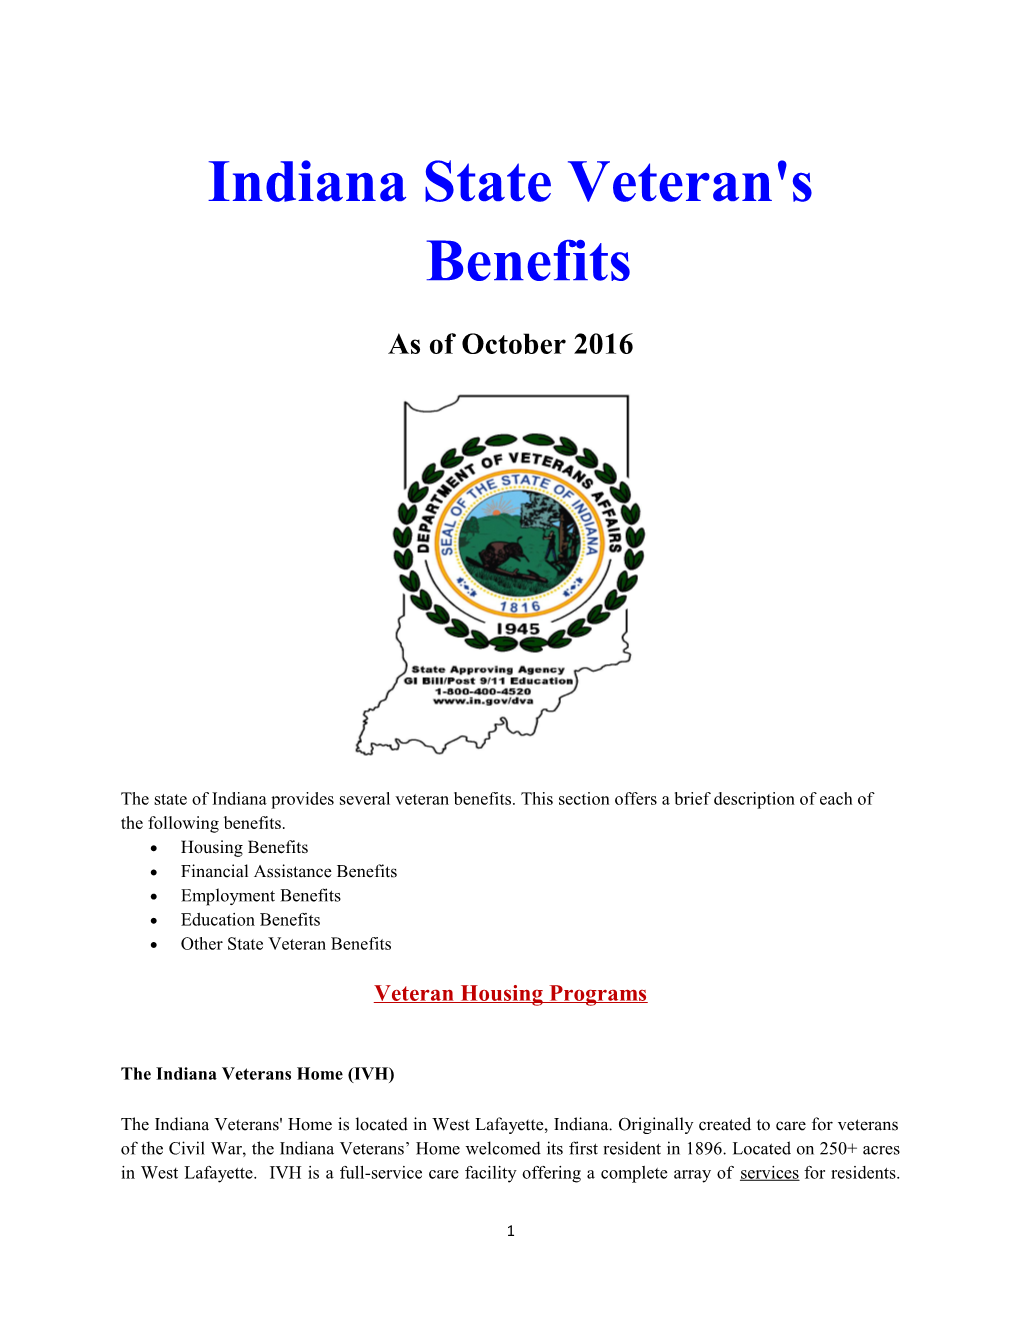 Indiana State Veteran's Benefits